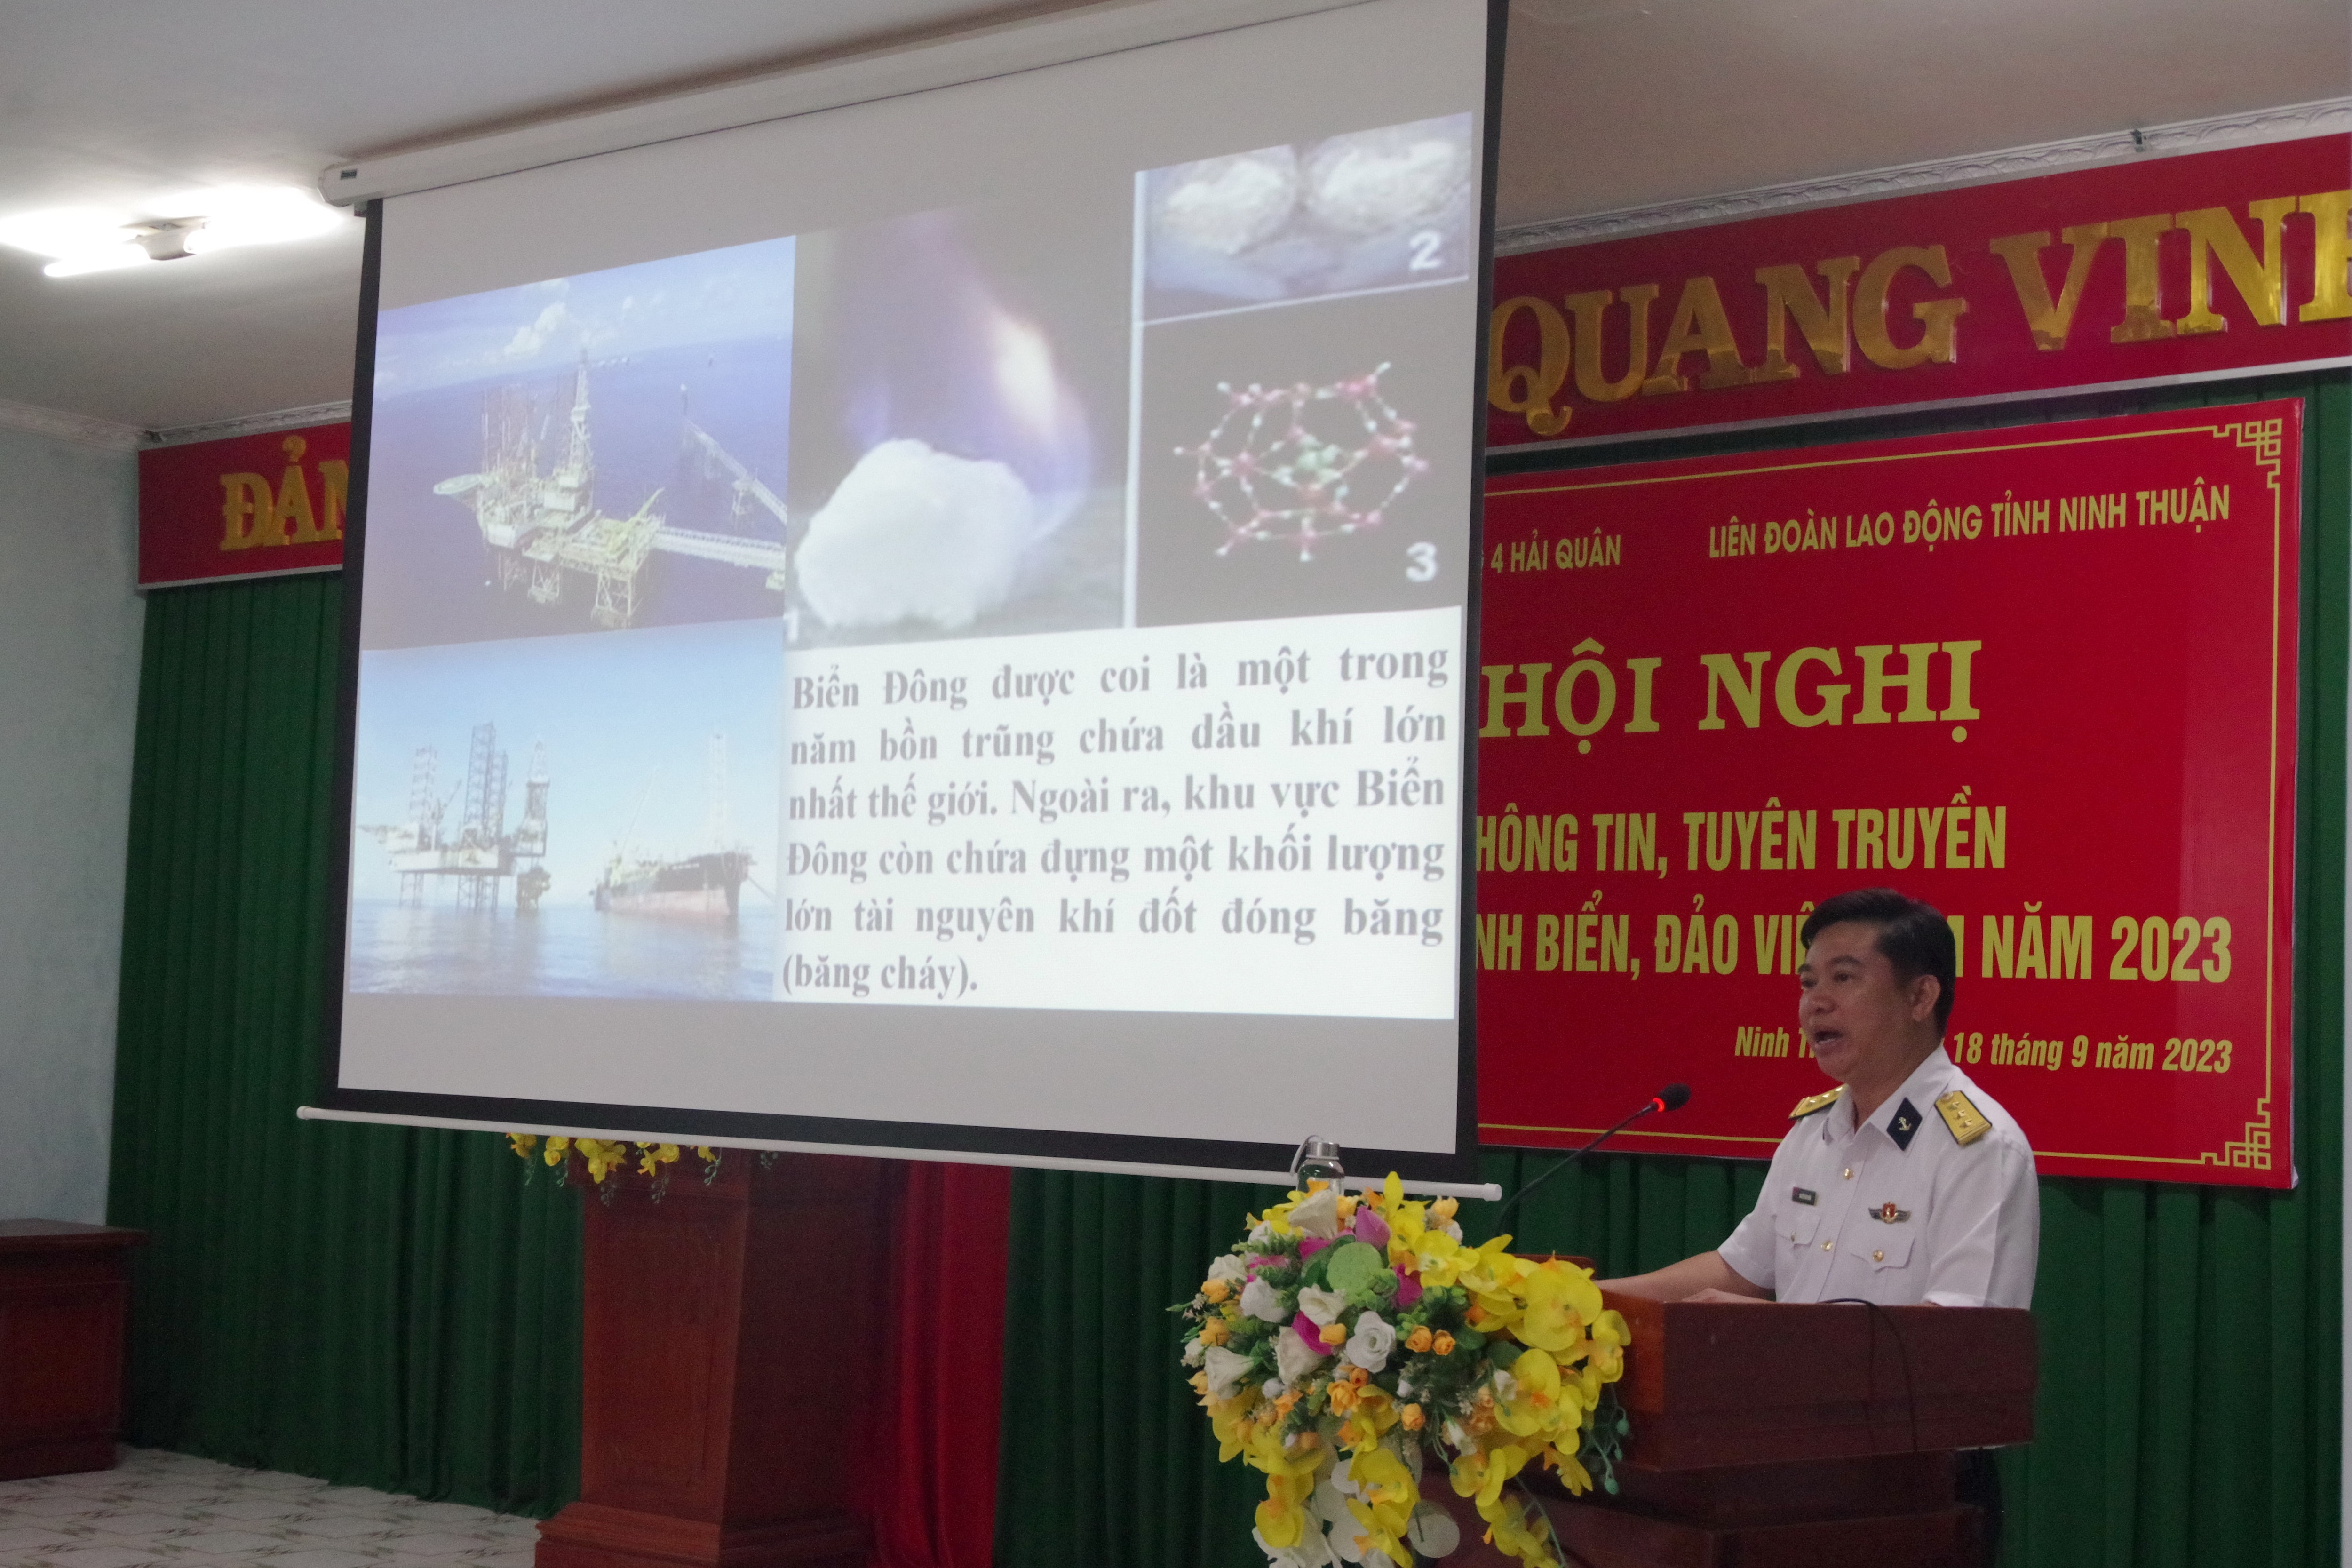 Sự kiện - Tuyên truyền về tình hình biển, đảo cho người dân ở tỉnh Ninh Thuận (Hình 2).